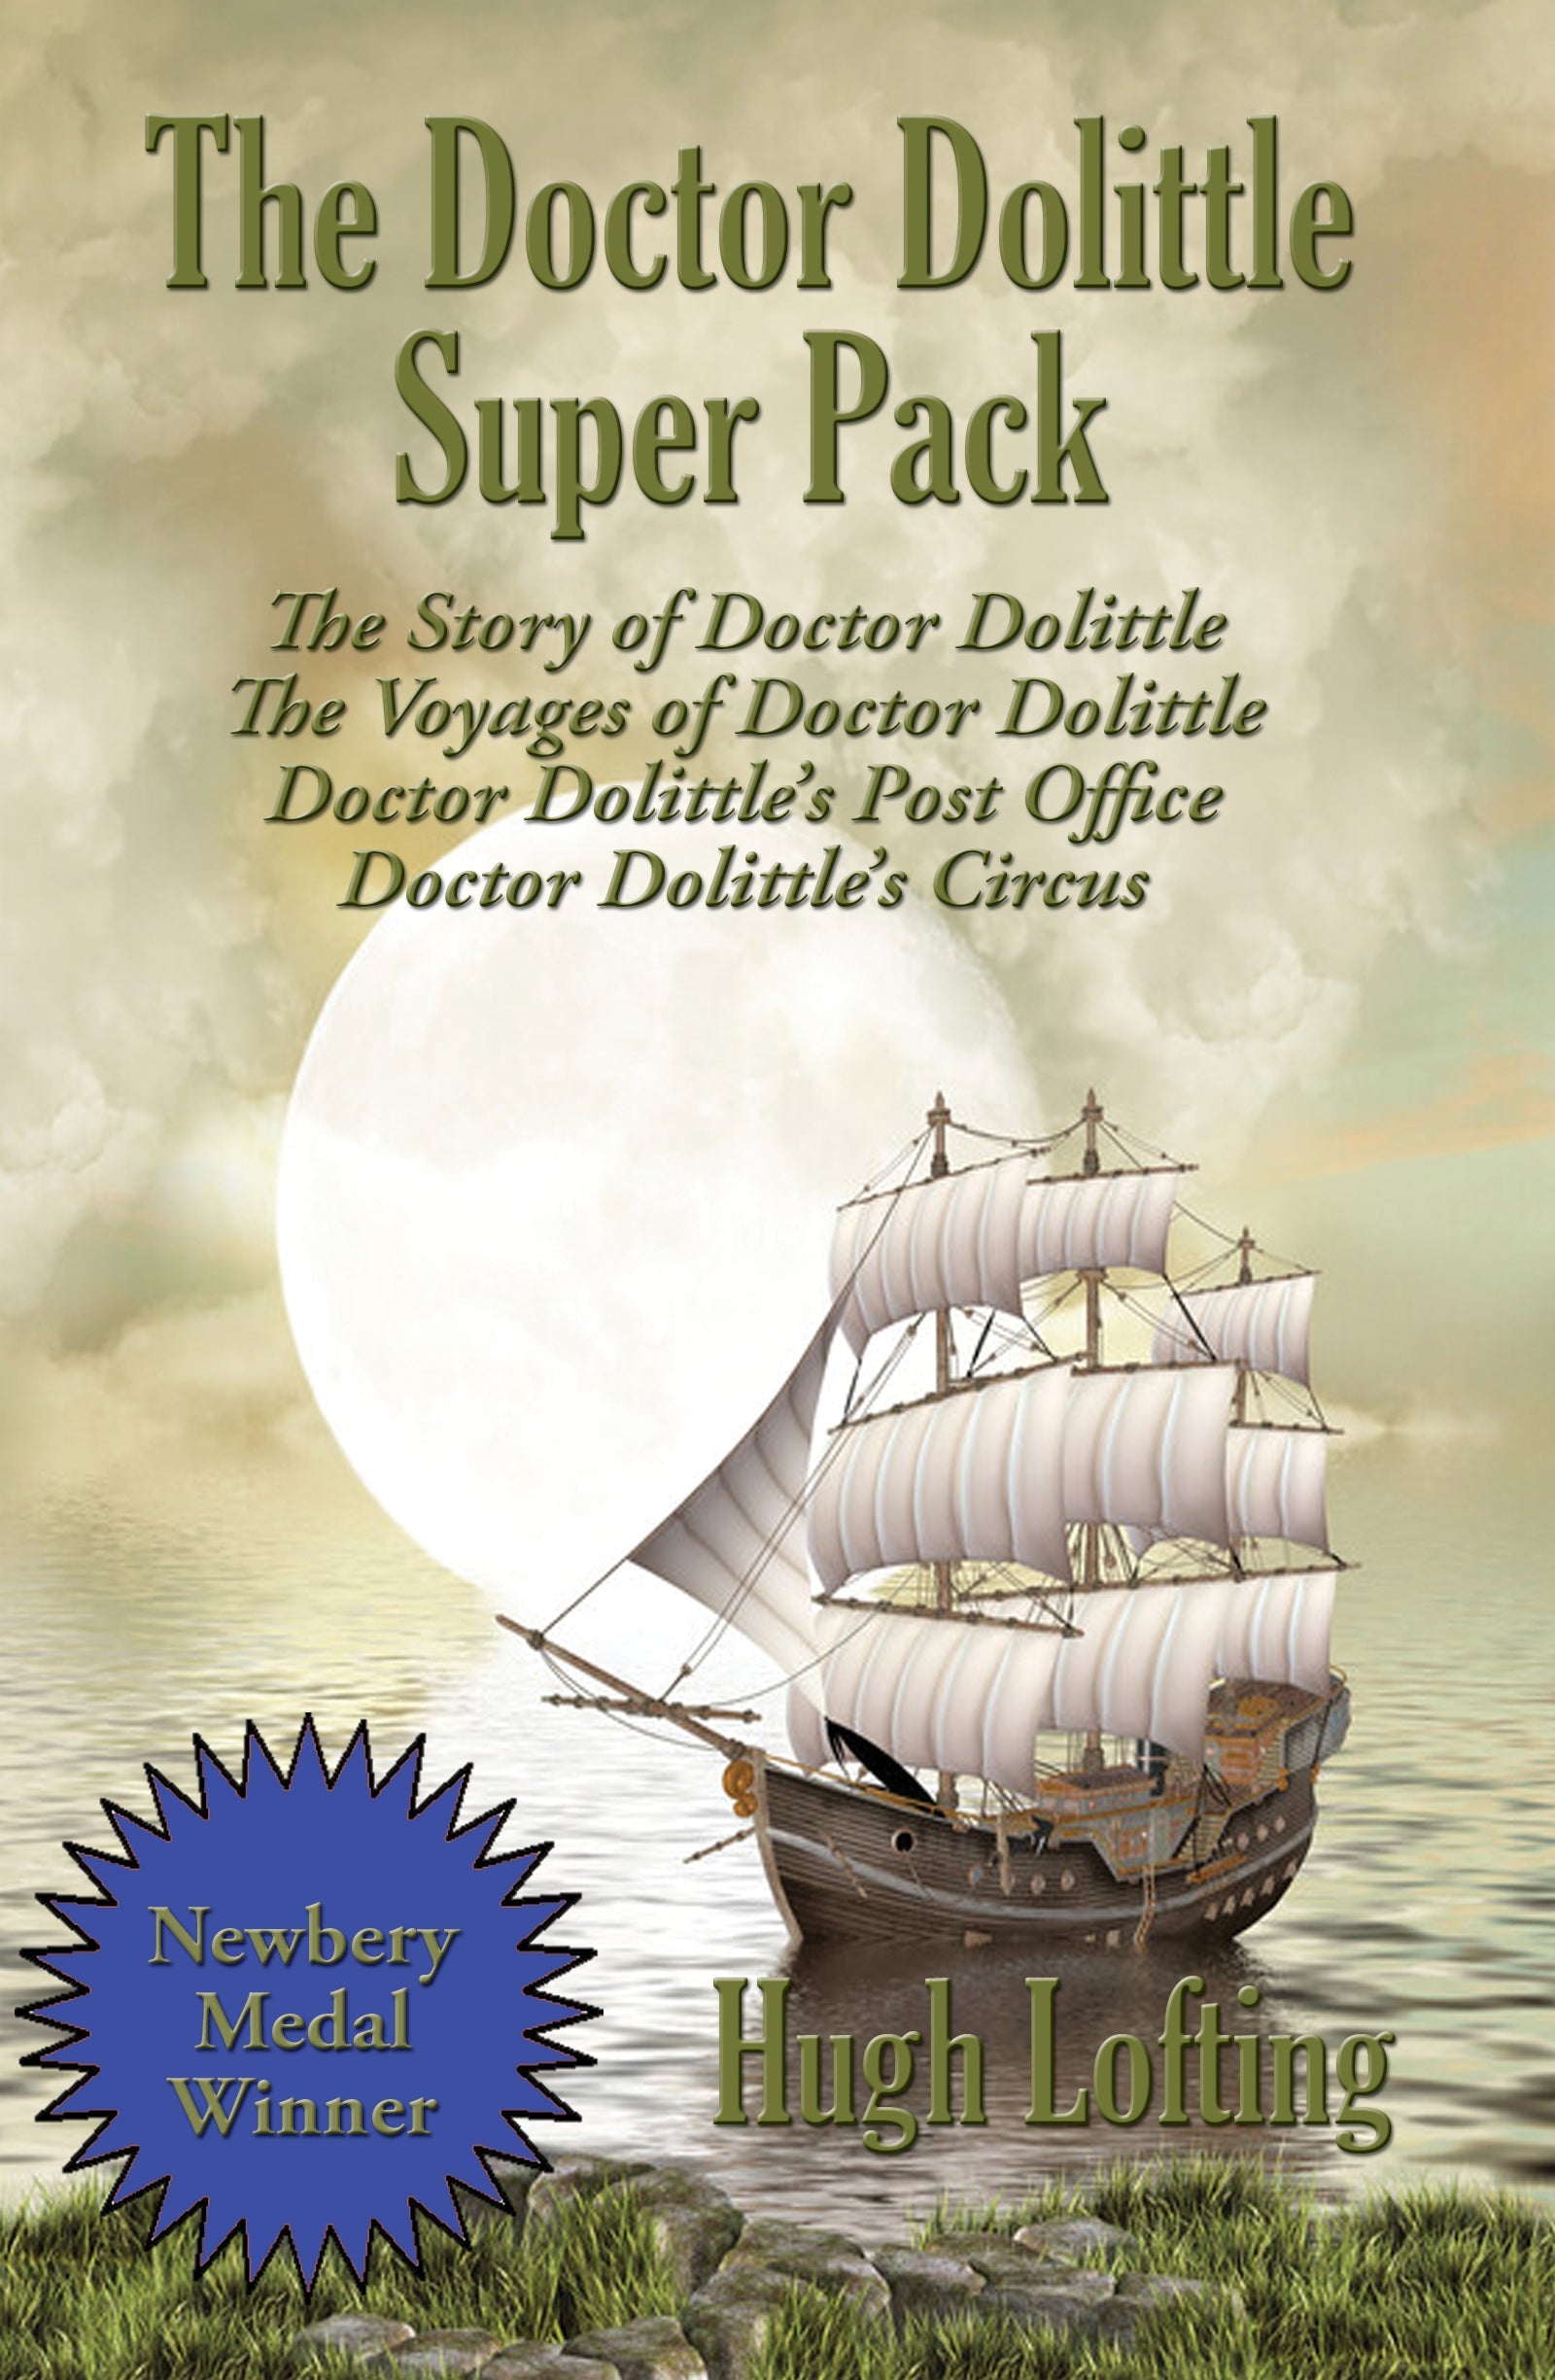 Cover art for Positronic Super Pack #36, the Doctor Doolittle Super Pack.